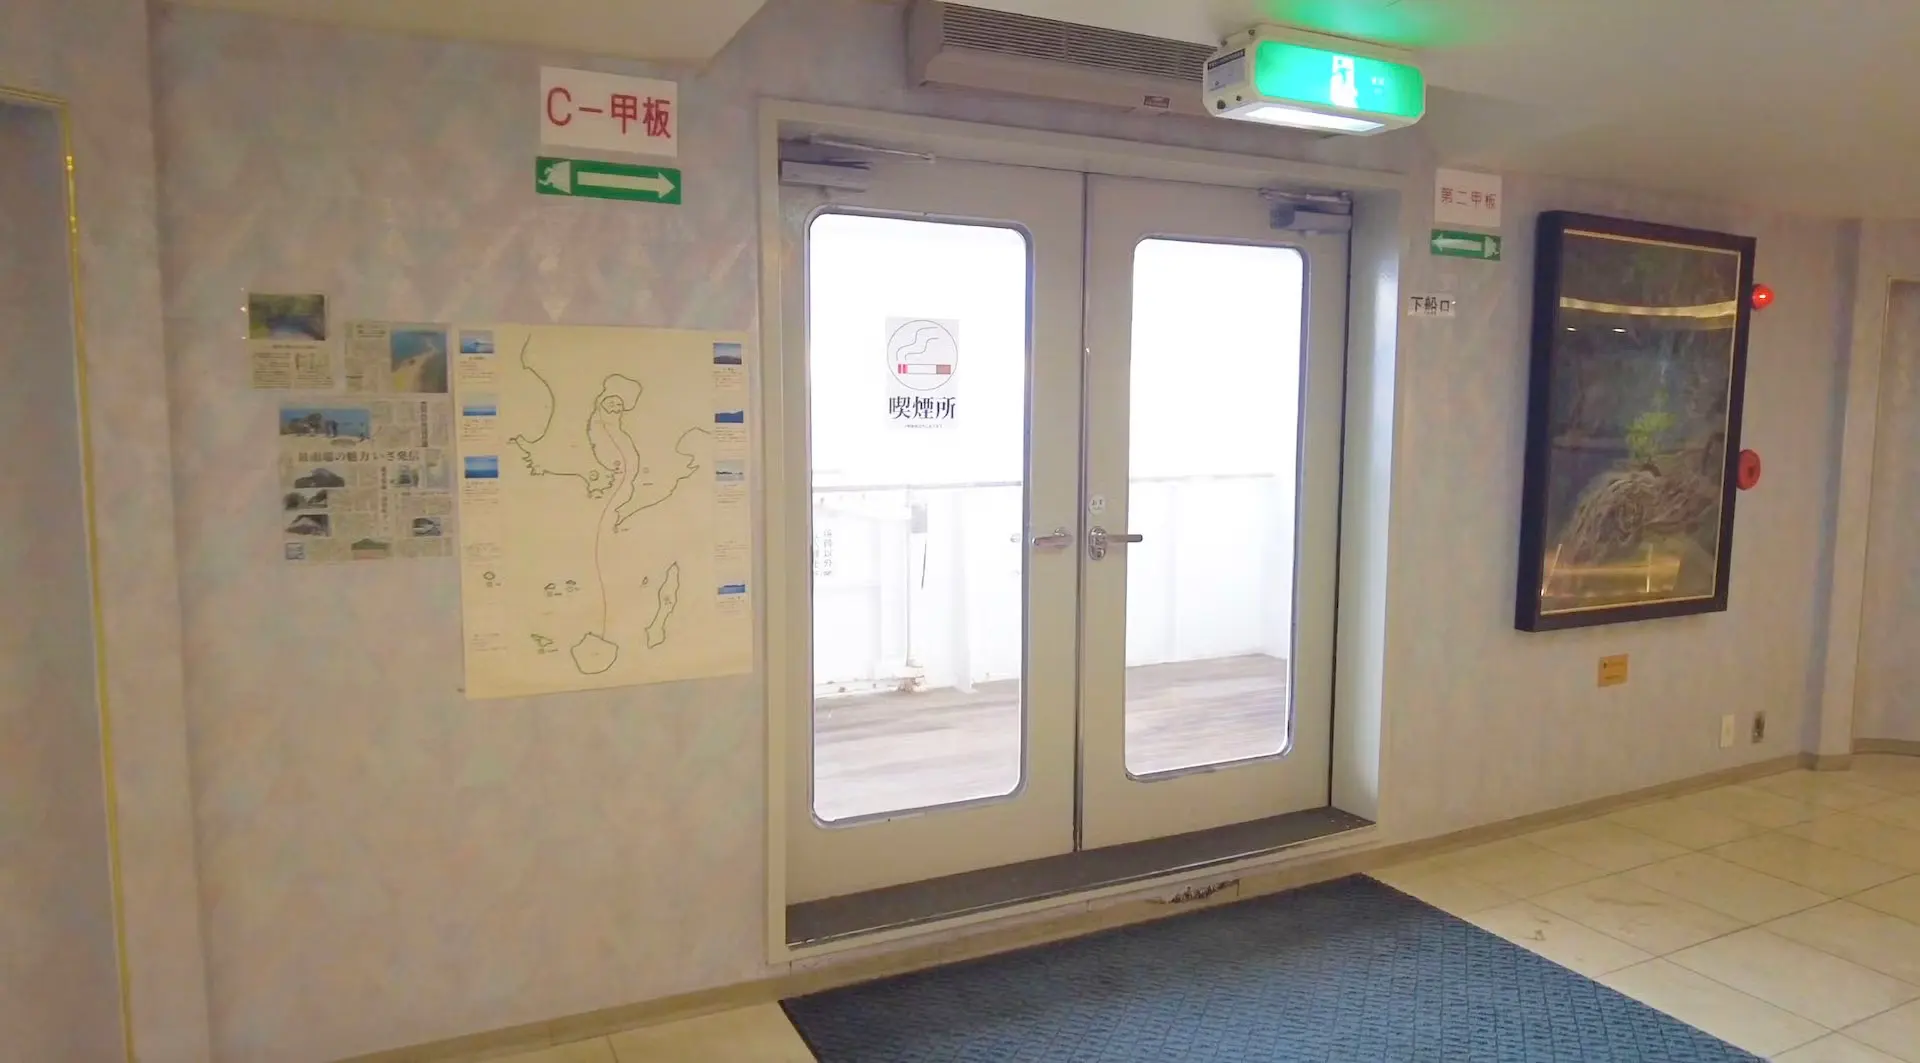 折田汽船屋久島2號渡輪上的吸煙區。